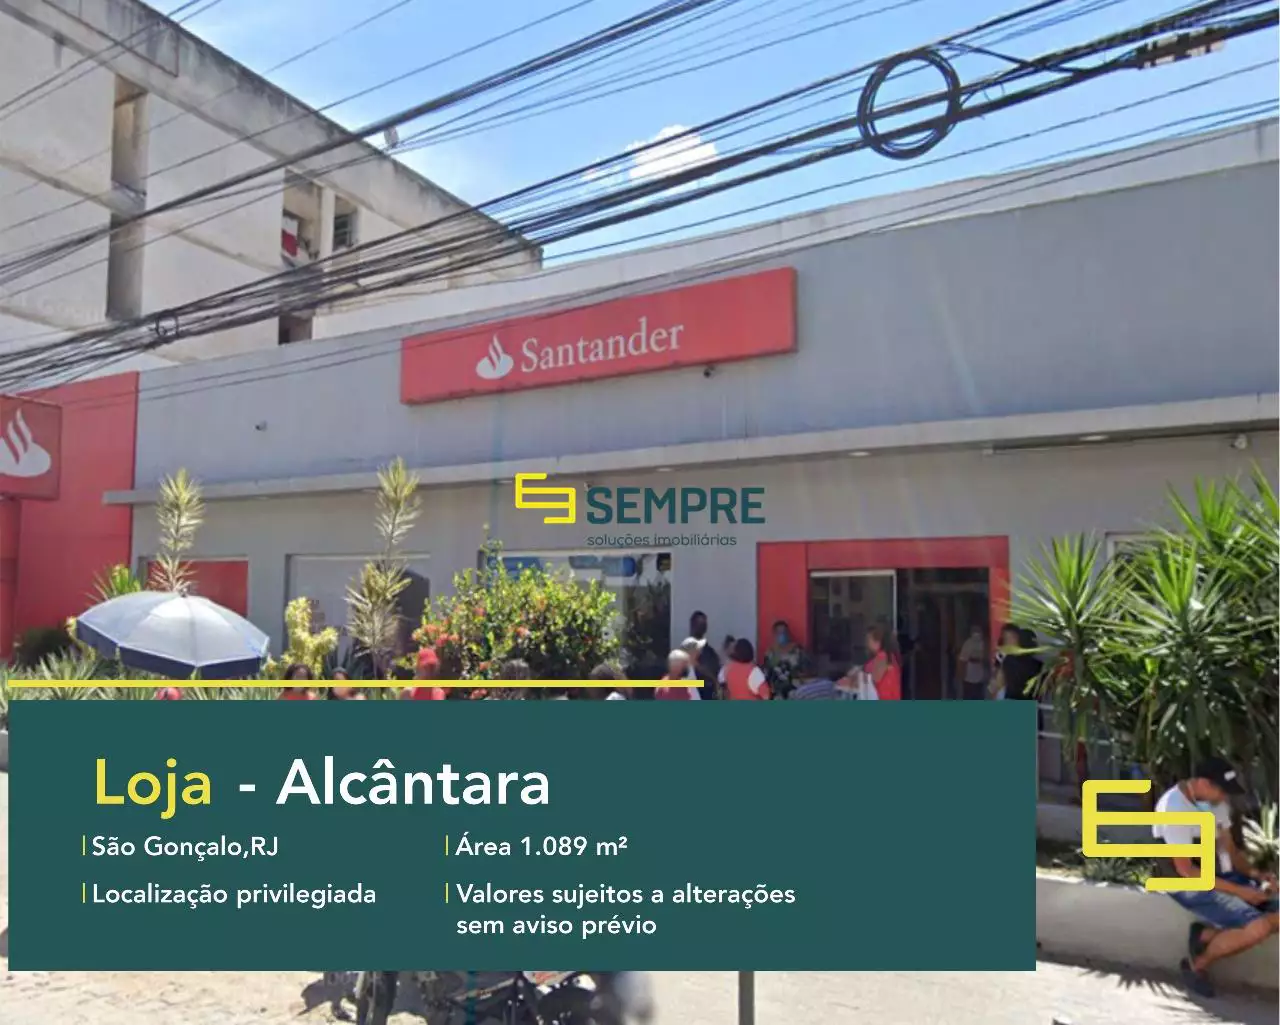 Loja para vender em Alcântara São Gonçalo/RJ, em excelente localização. O estabelecimento comercial conta com área de 1.089,68 m².